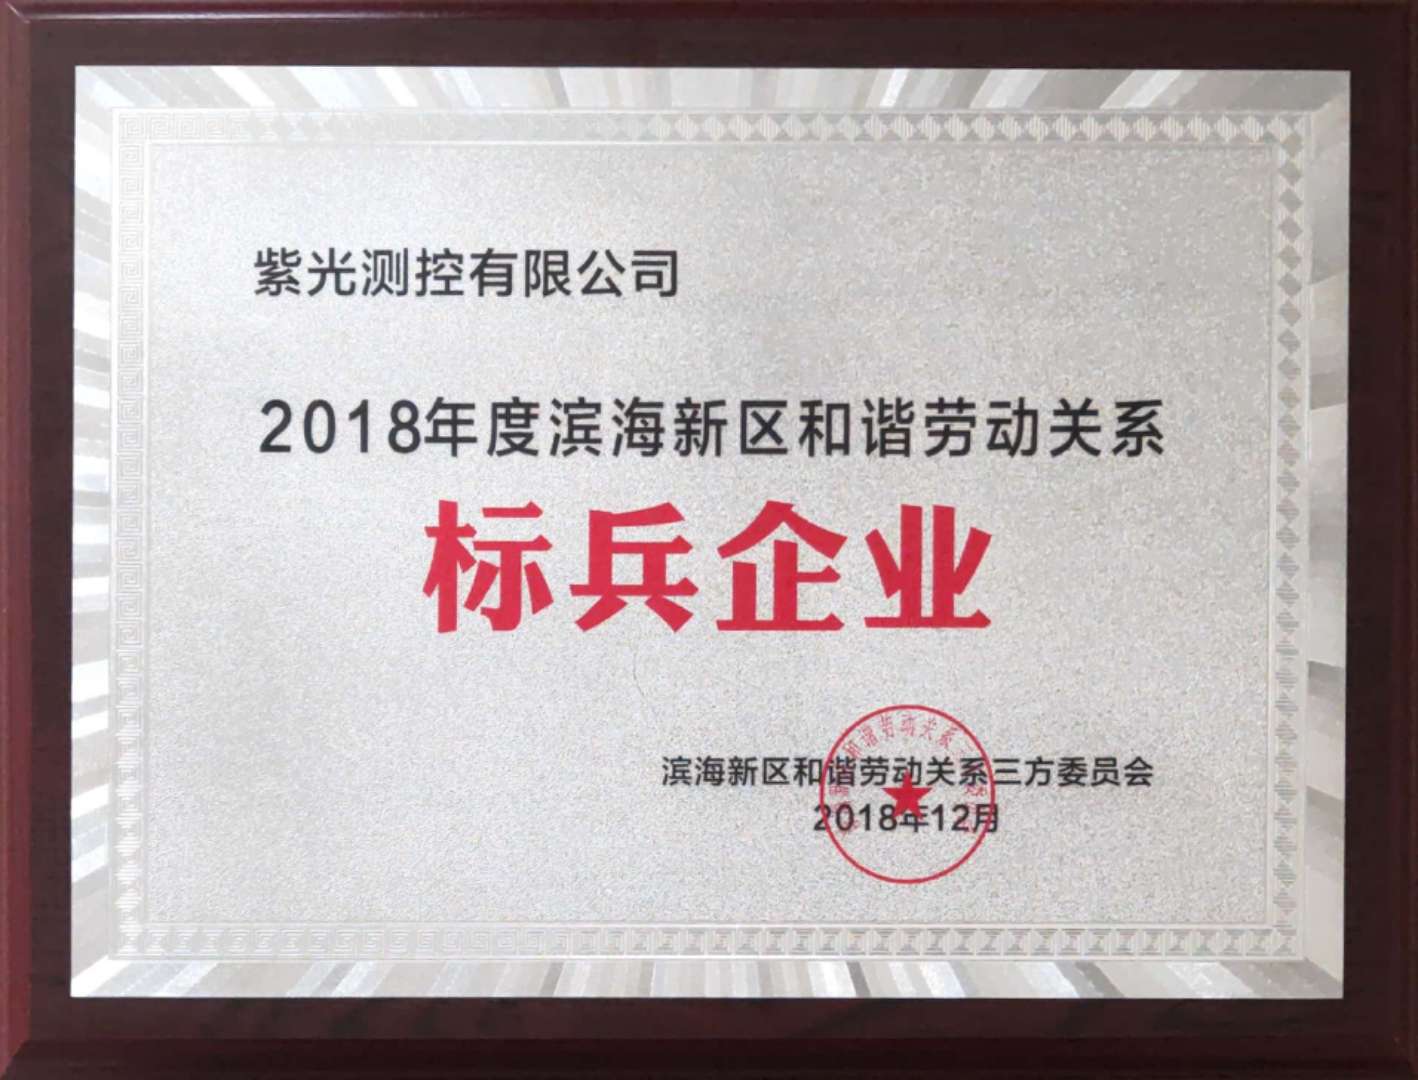 紫光测控有限公司被评为“2018年度滨海新区和谐劳动关系标兵企业”